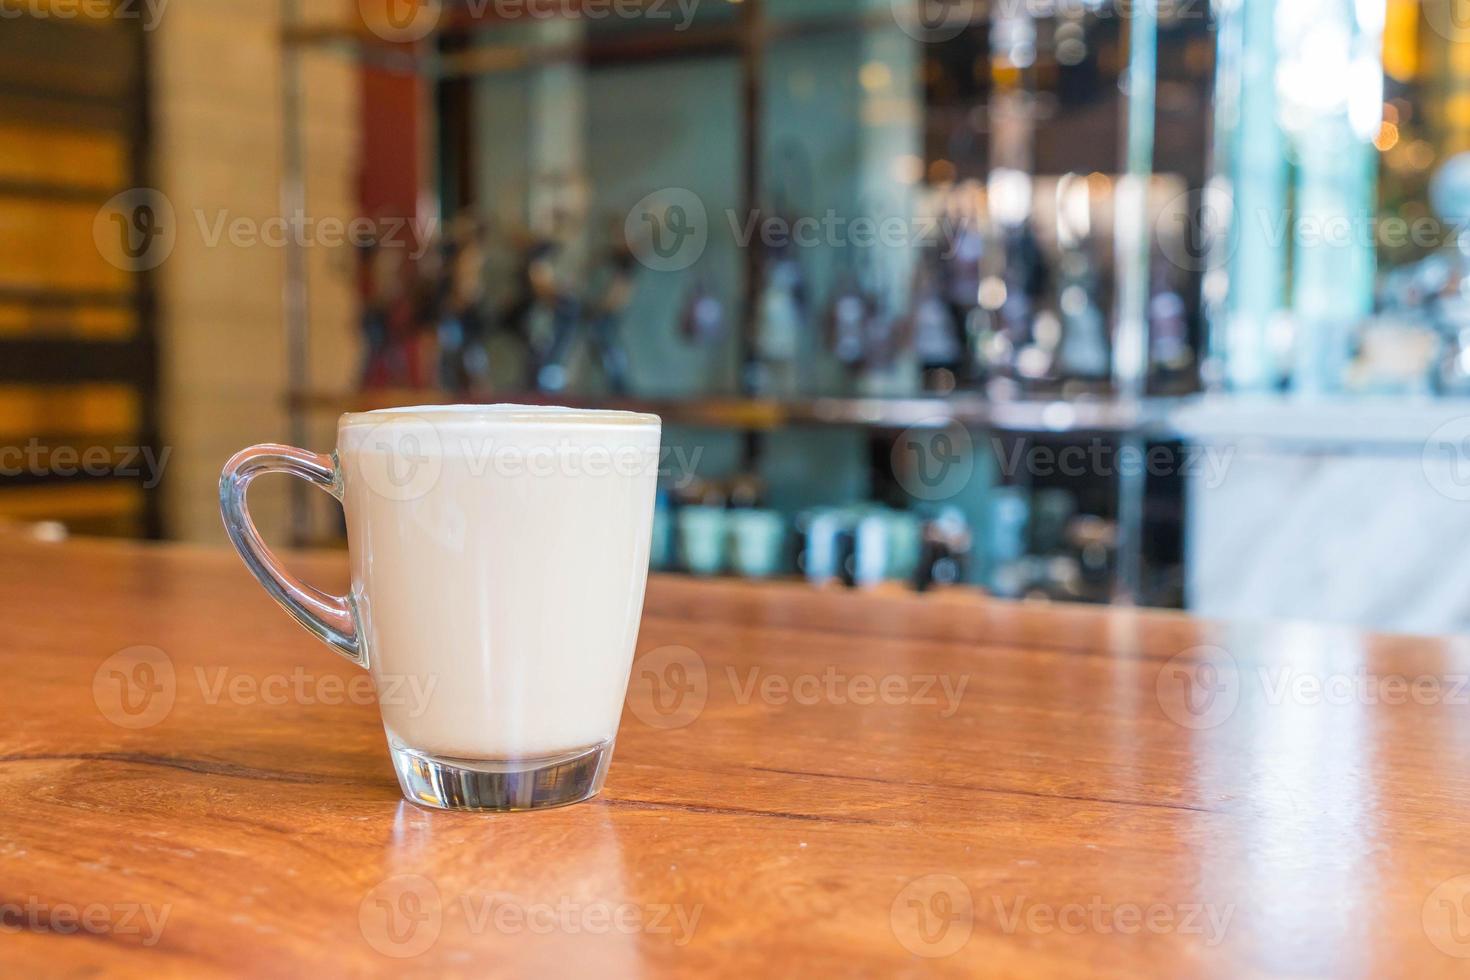 xícara de café com leite quente em cafeteria foto